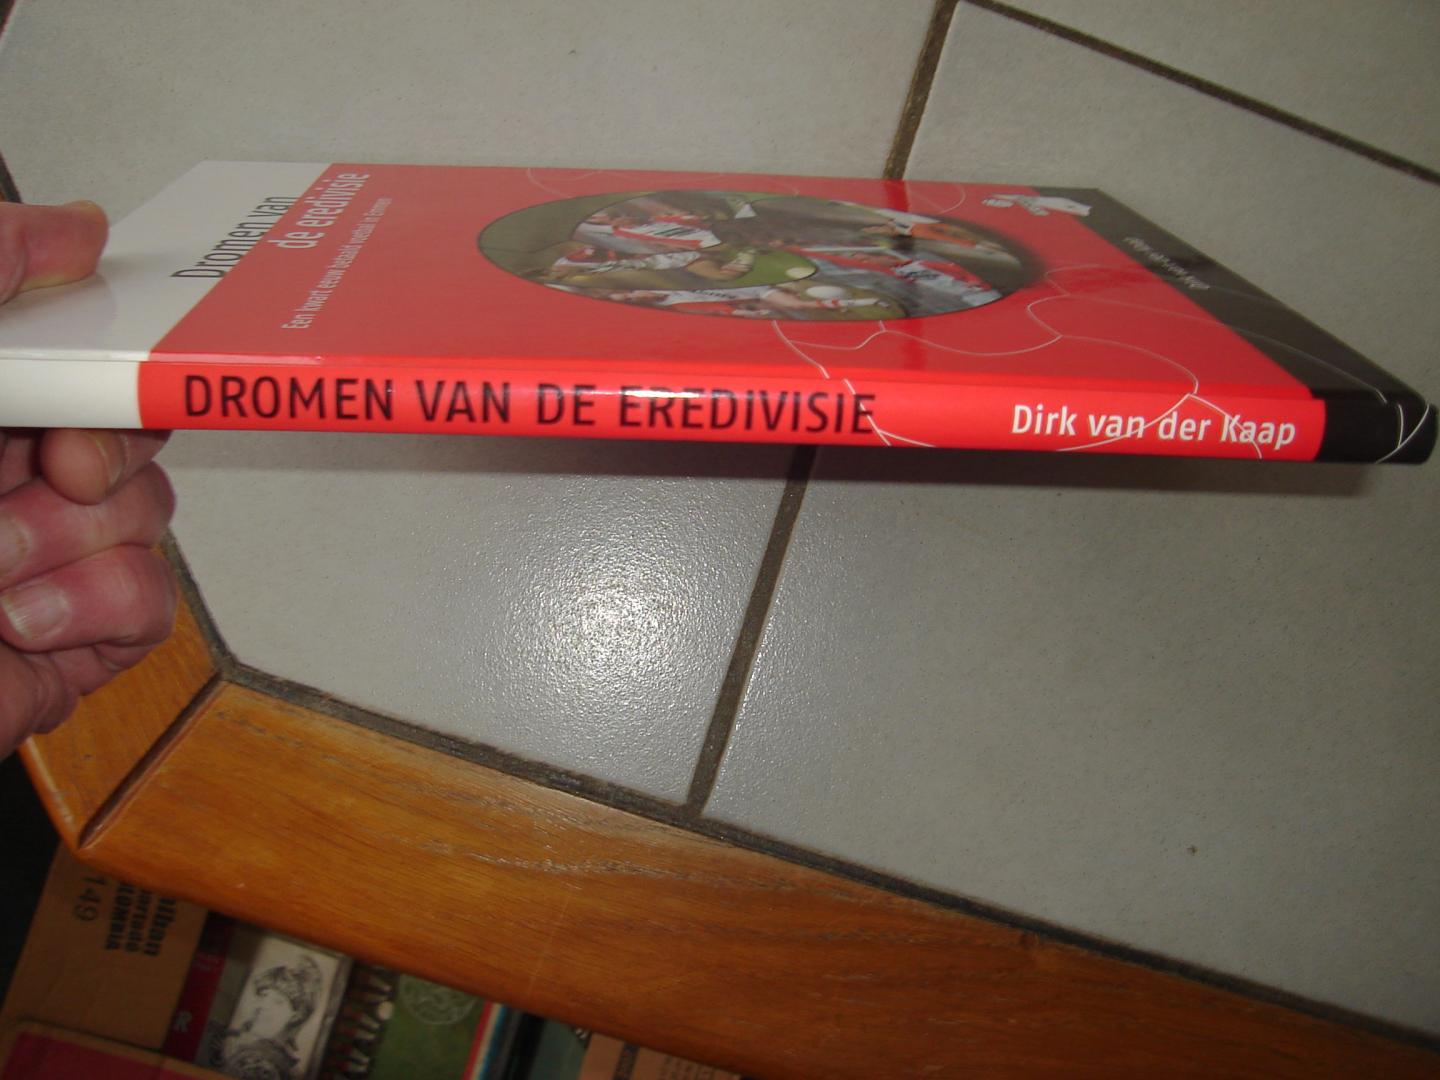 Dirk van der Kaap. - Dromen van de eredivisie. 25 jaar FC Emmen. Een kwart eeuw betaald voetbal in emmen. 1985 - 2010.